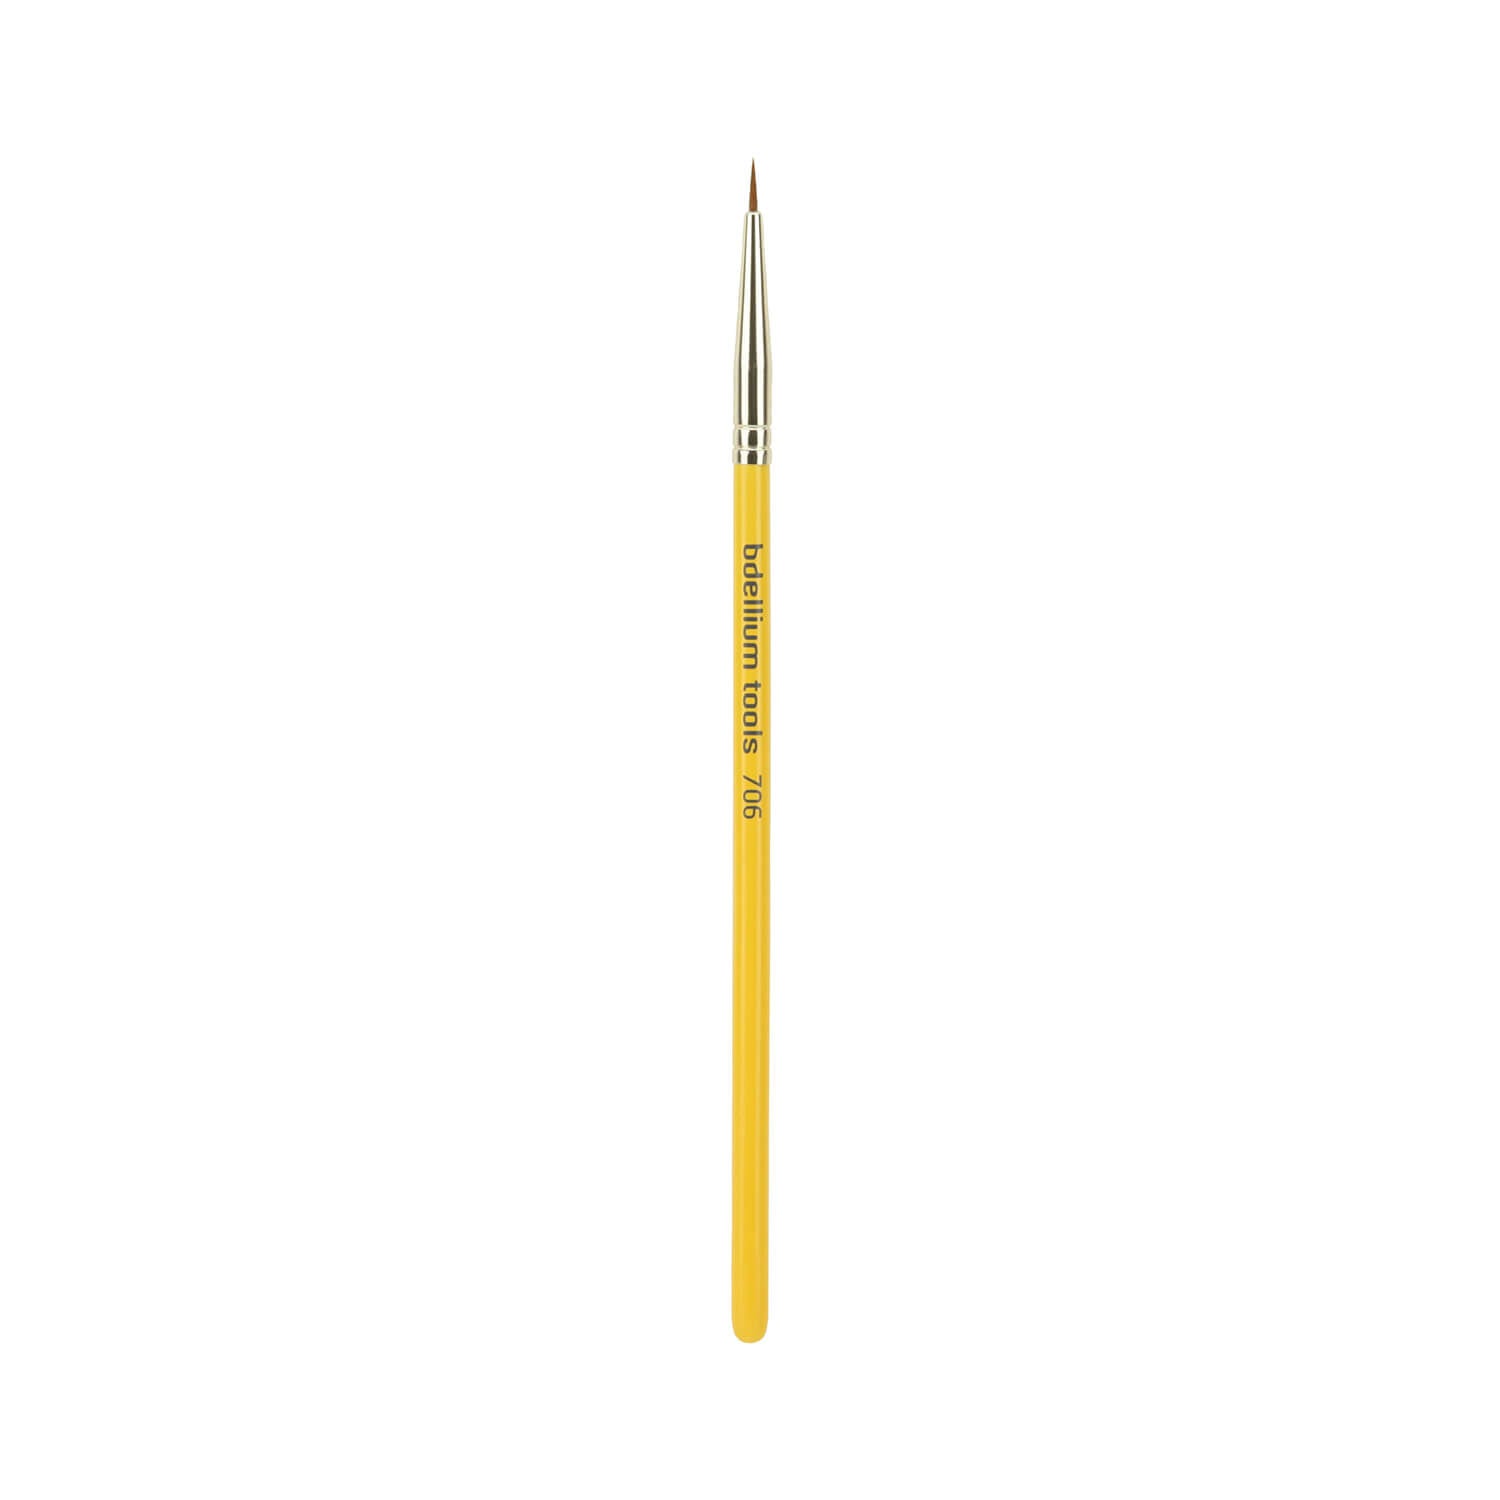 The Artist Brush Pen Eyeliner